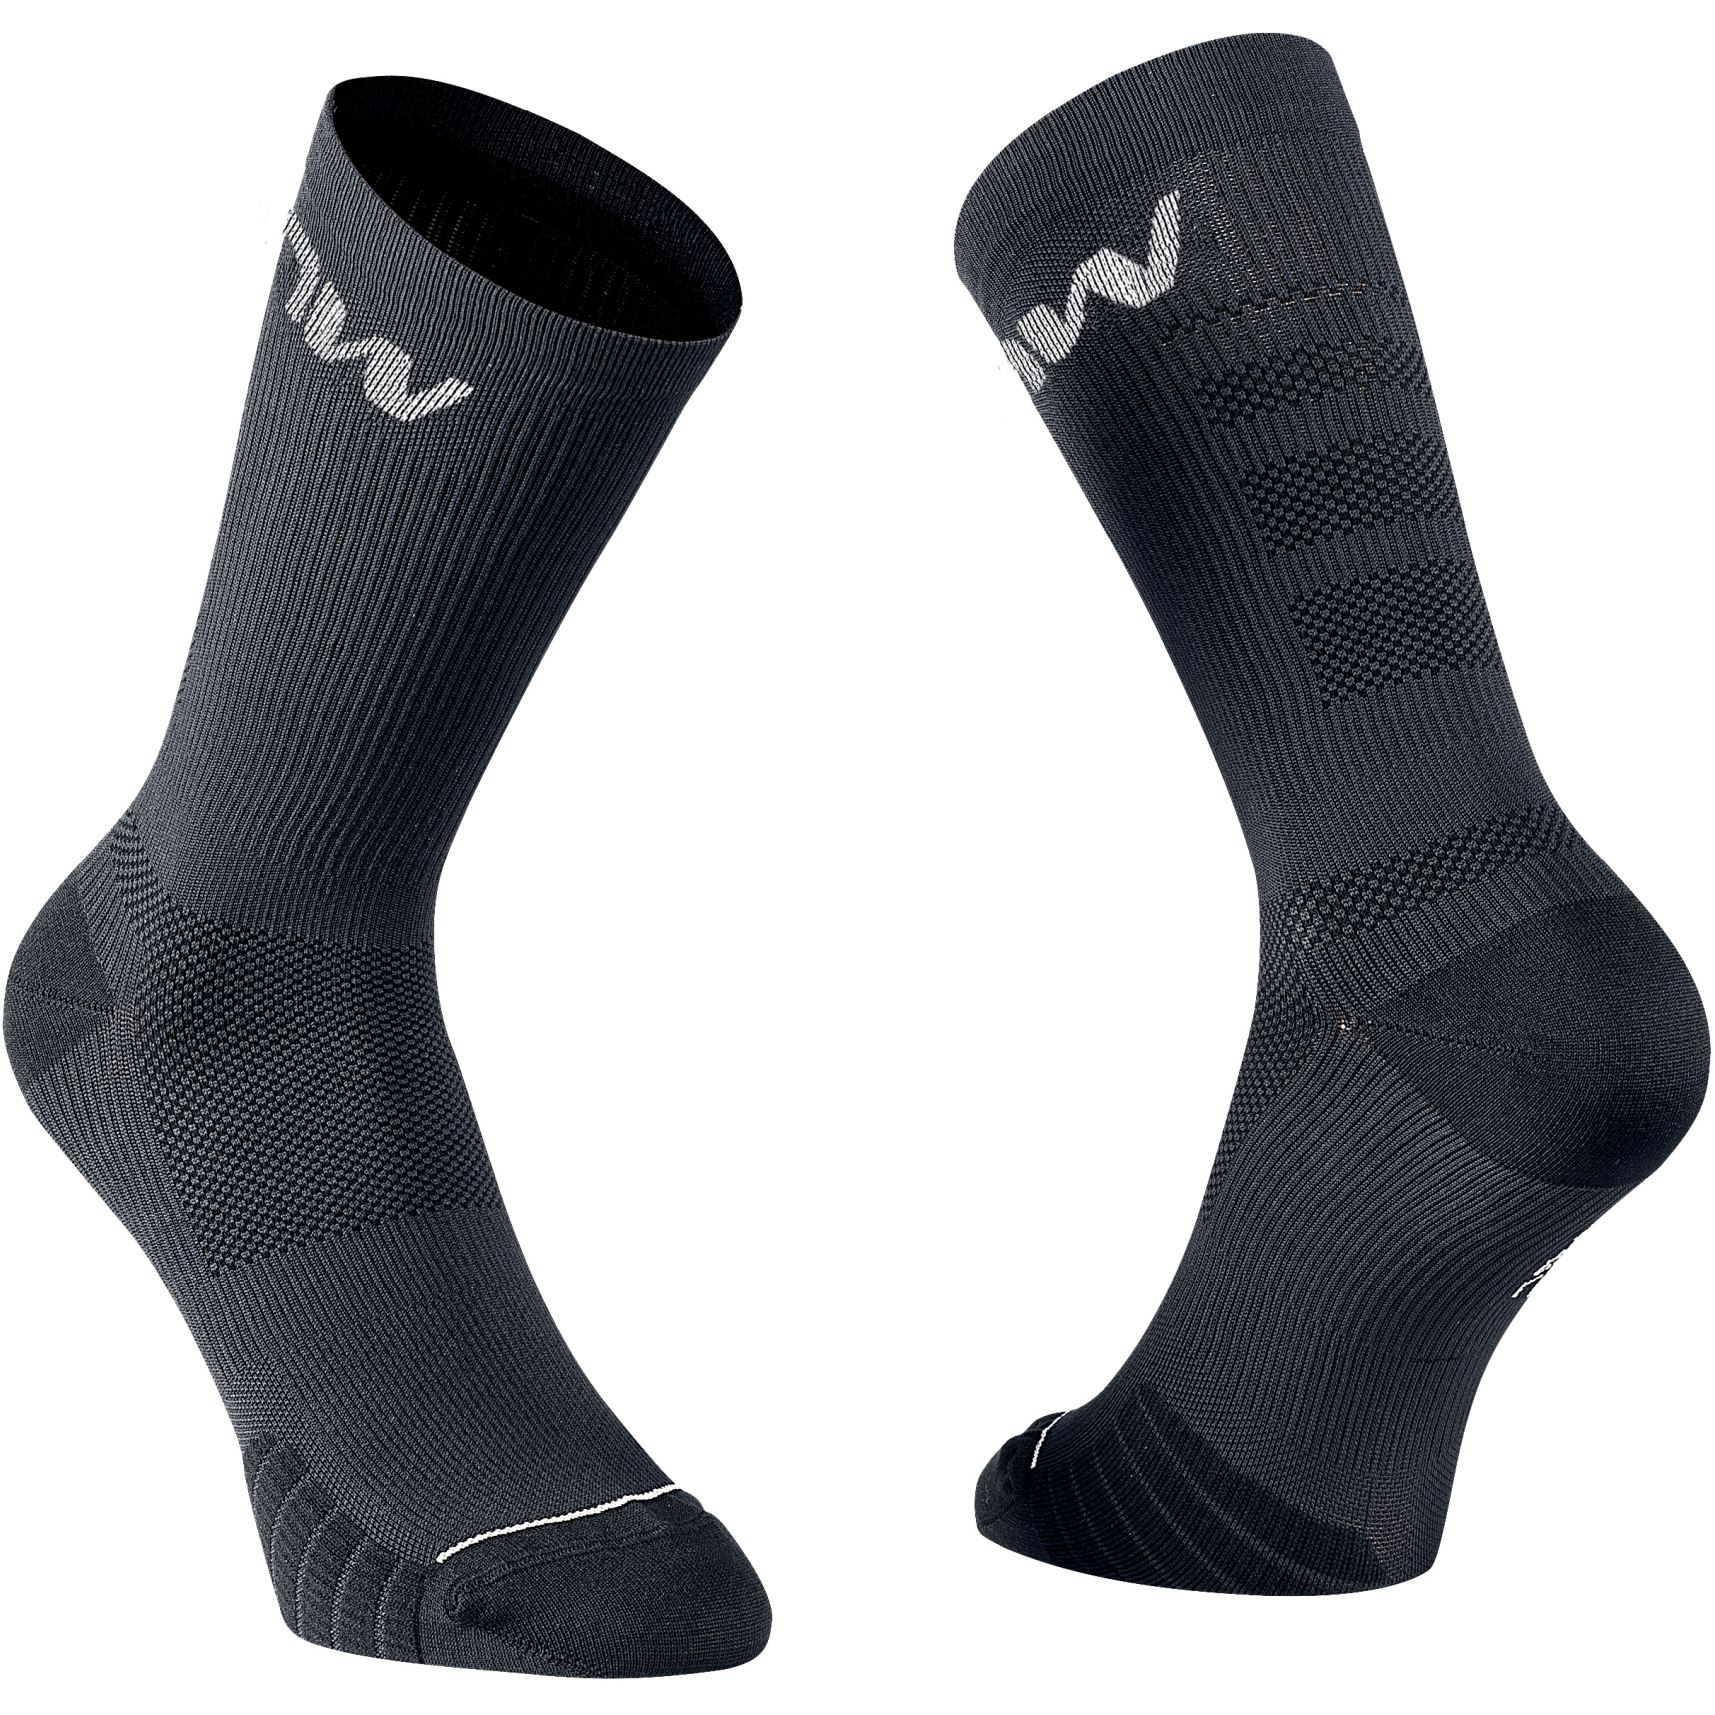 Produktbild von Northwave Extreme Pro Socken - schwarz/grau 07